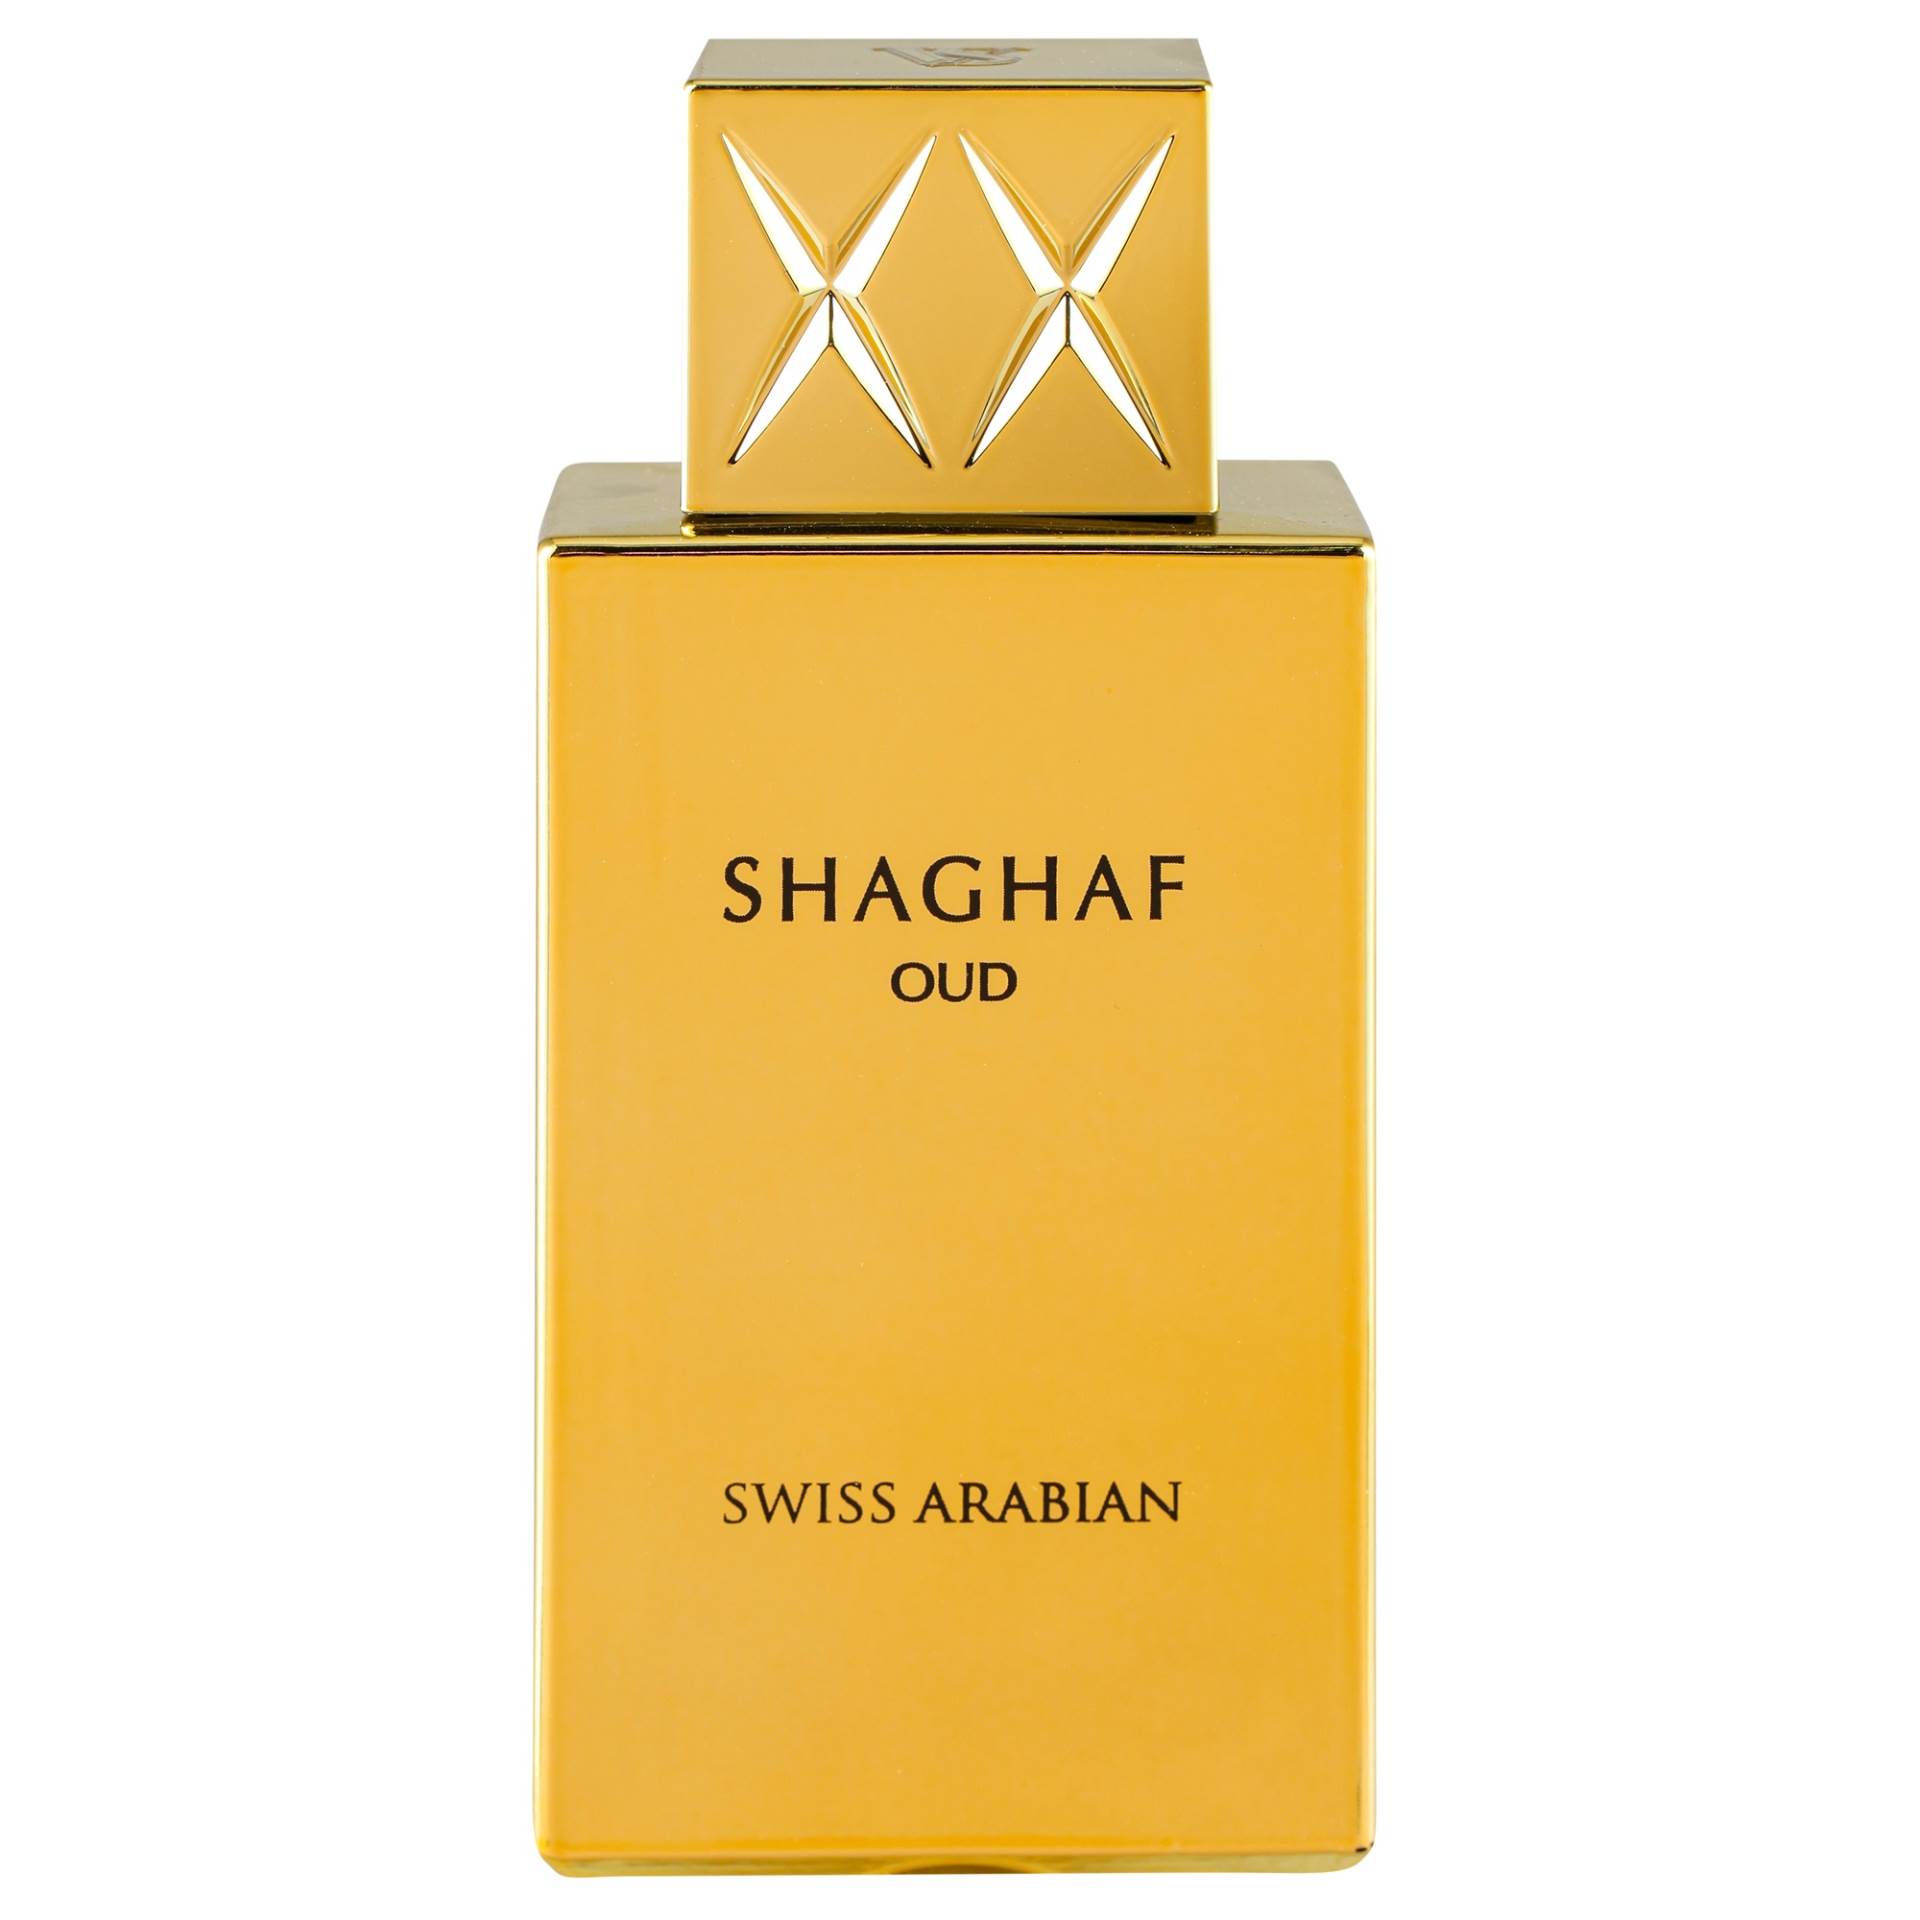  1 SWISS ARABIAN SHAGHAF primary.jpg 